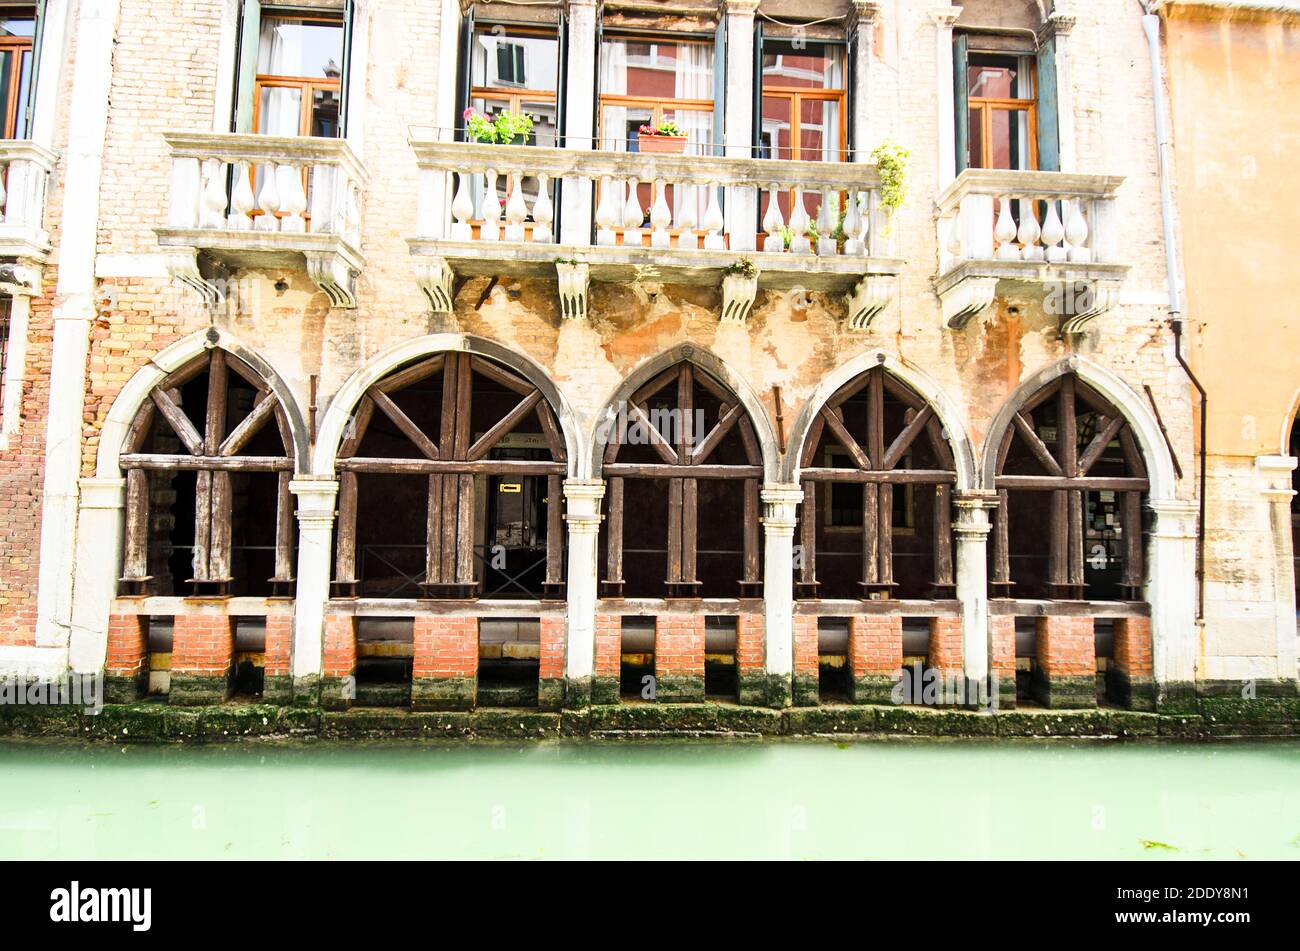 Building facade facing the canal - Venice, Italy Stock Photo